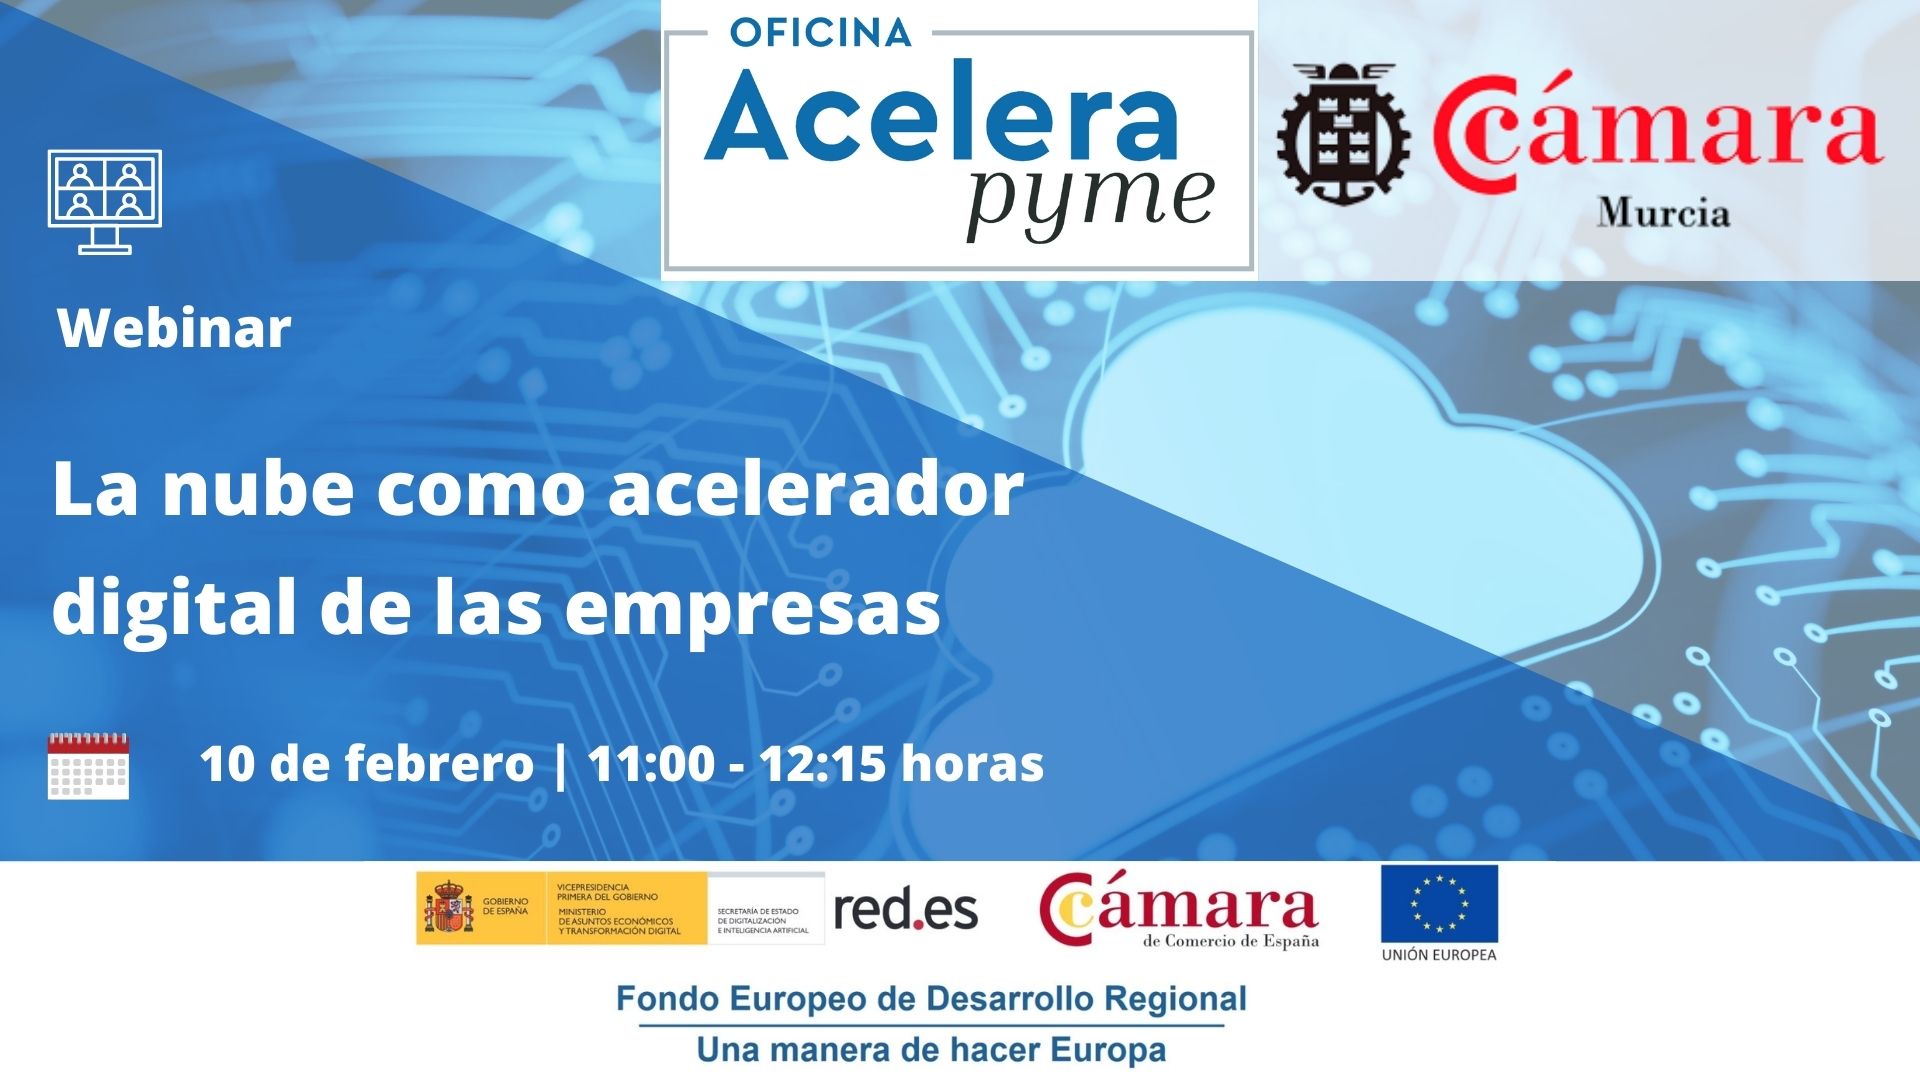 Seminario | La nube como acelerador digital de las empresas | Oficina Acelera Pyme | Cámara de Comercio de Murcia